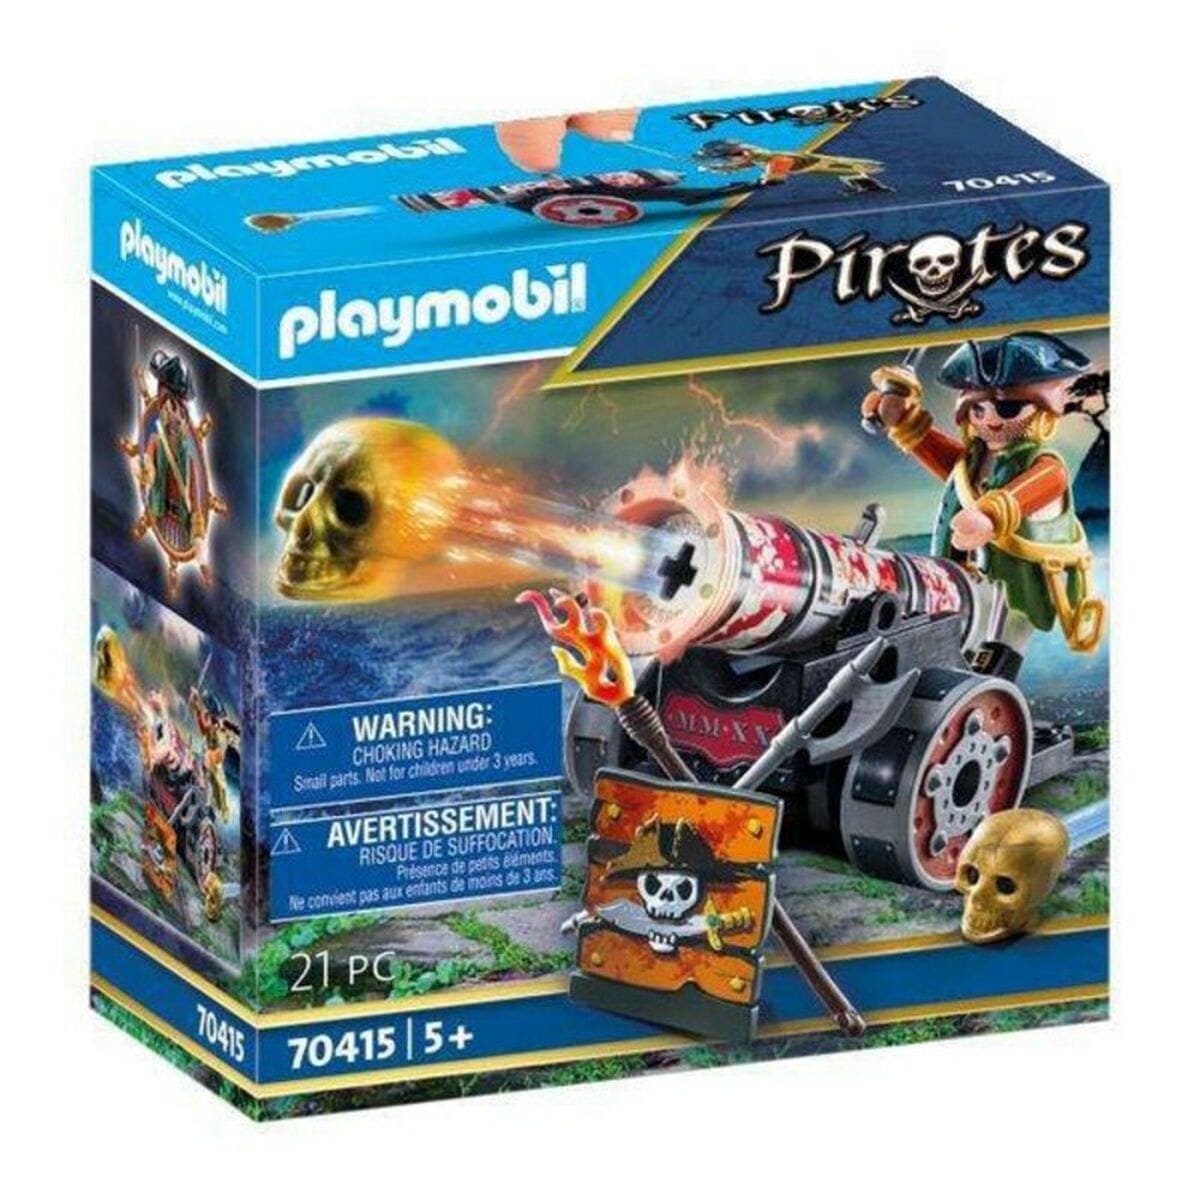 Playmobil Spielzeug | Kostüme > Spielzeug und Spiele > Puppen und Plüschtiere Playset Pirates Playmobil 70415 (21 pcs)